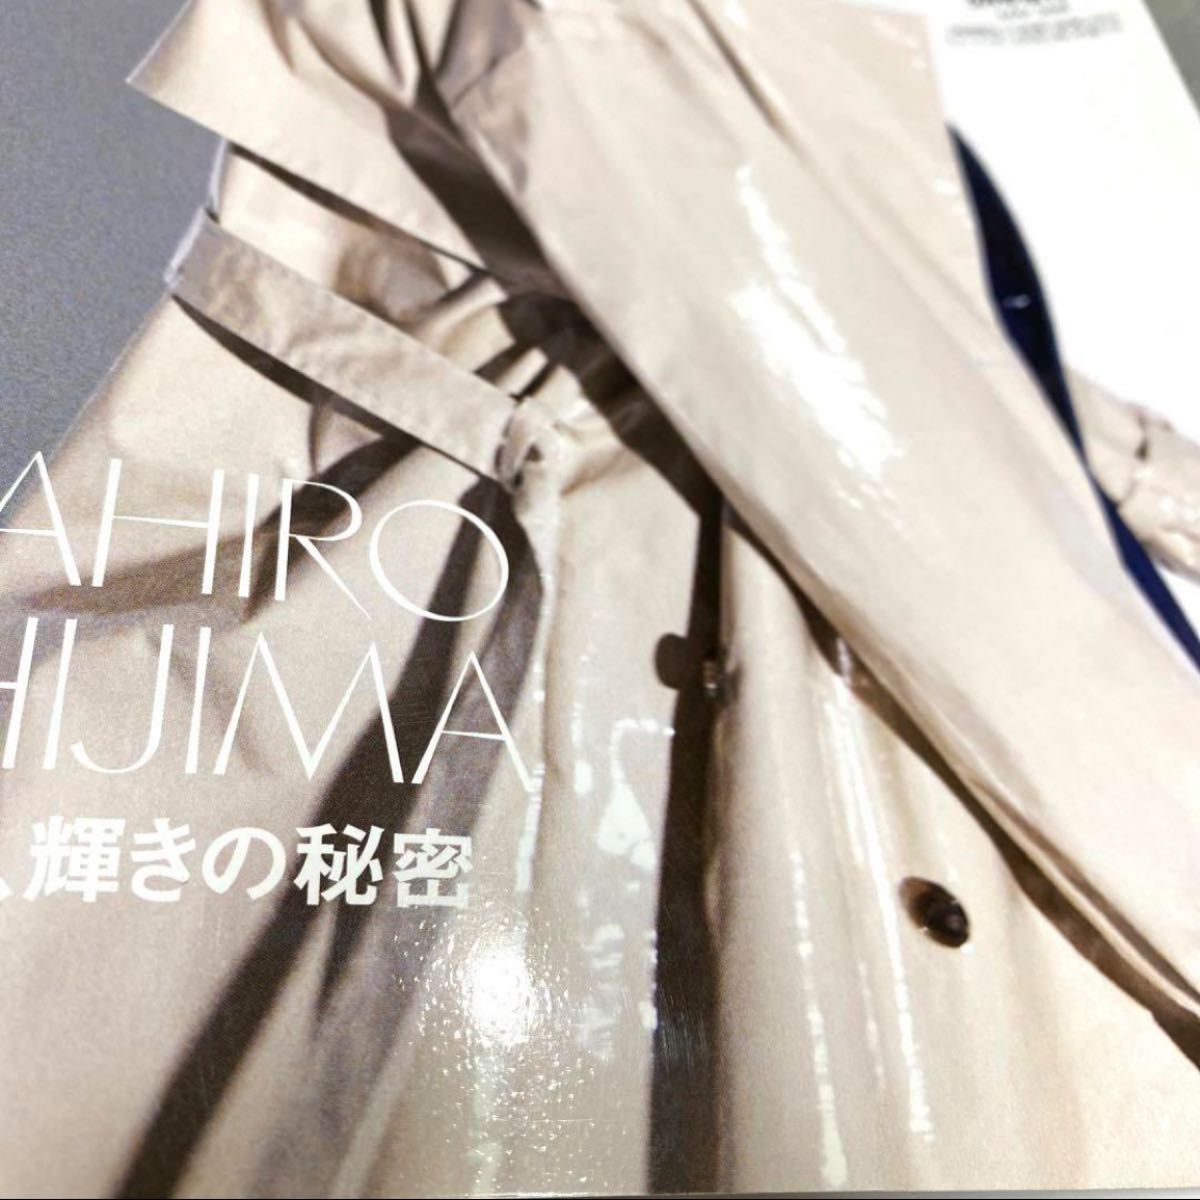 エルジャポン ELLE Nissy 西島隆弘 にっしー AAA トリプルエー 2019年 5月号増刊 雑誌 本 ファッション誌 